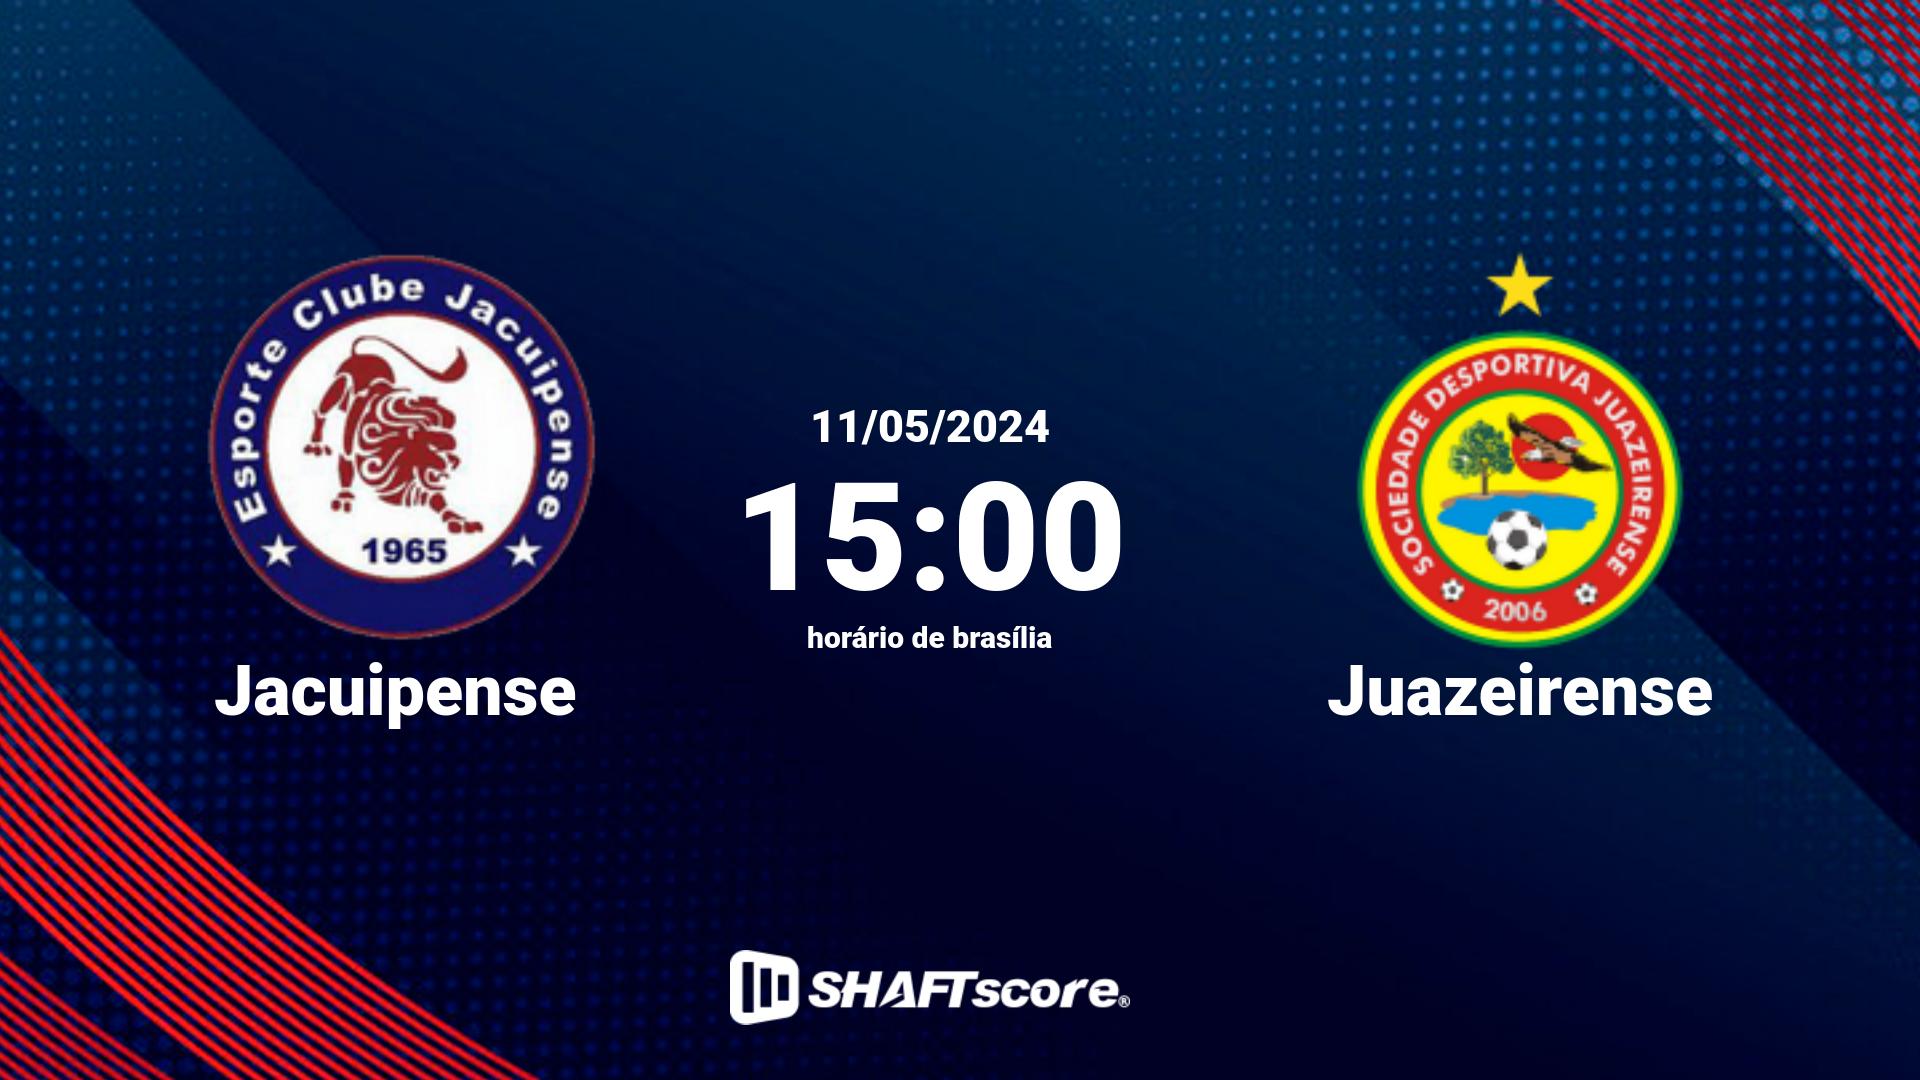 Estatísticas do jogo Jacuipense vs Juazeirense 11.05 15:00